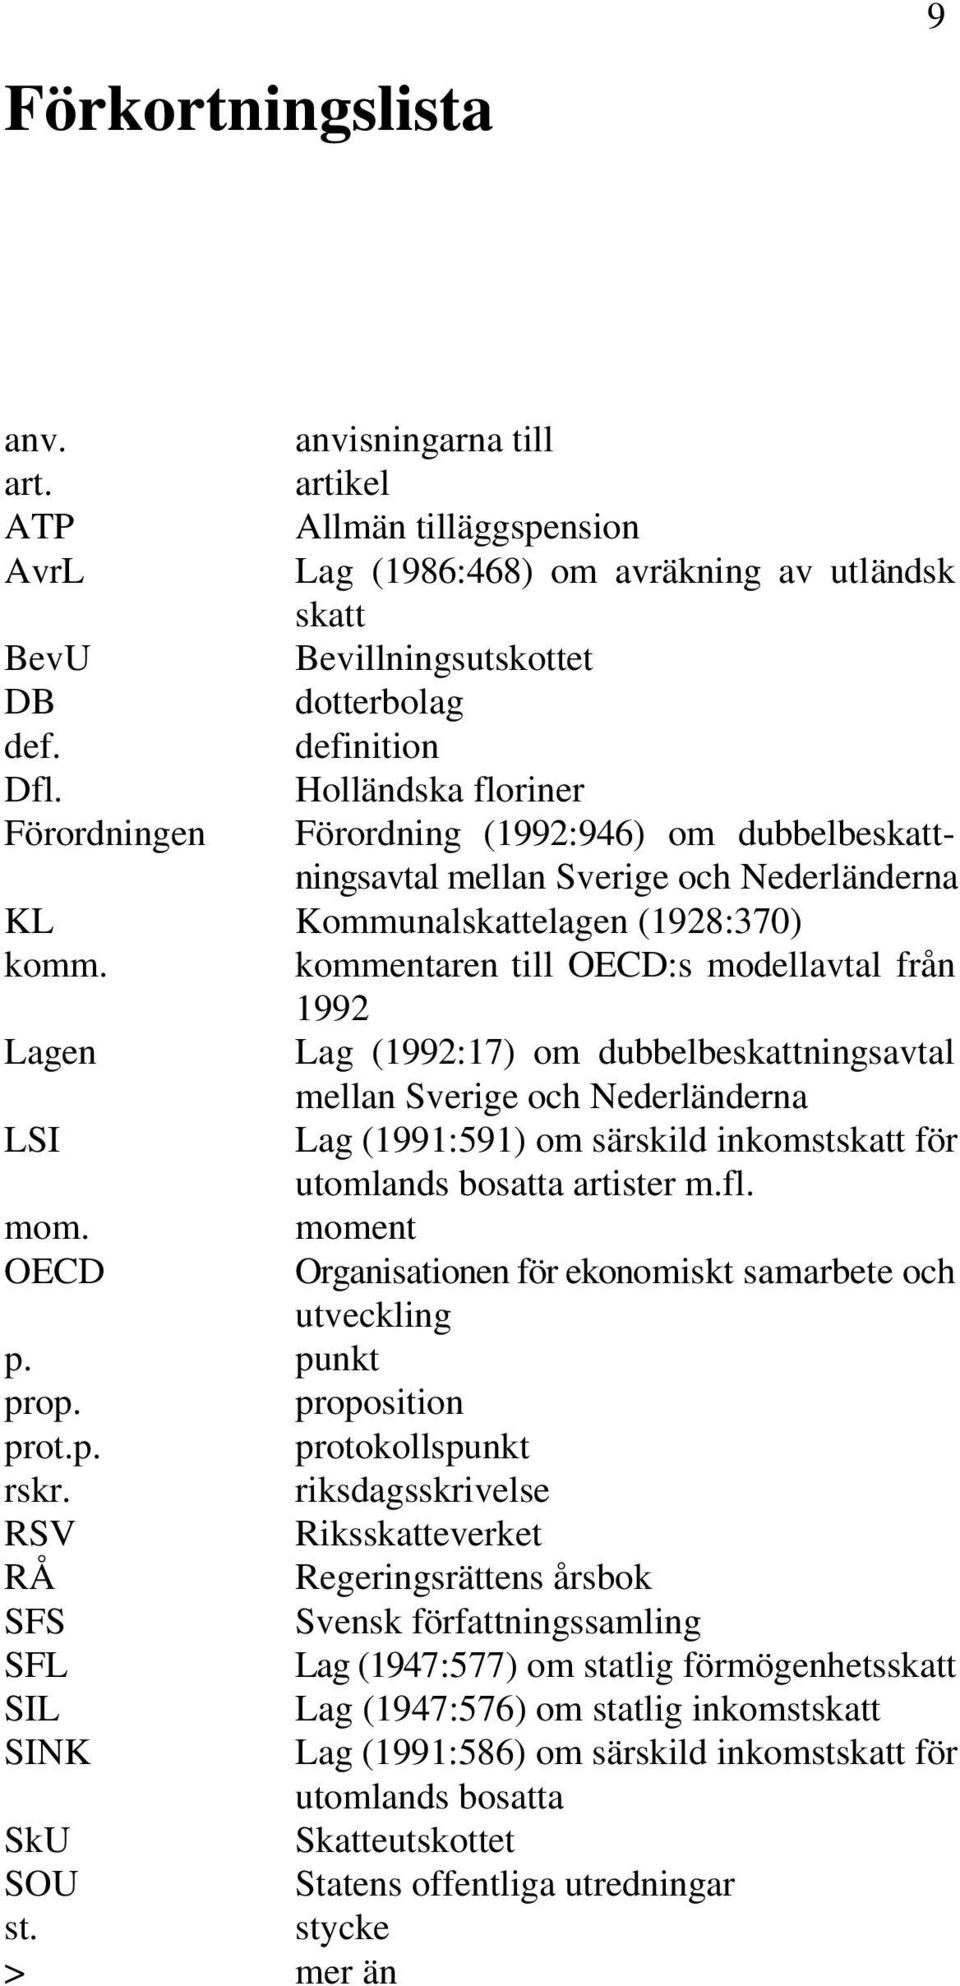 kommentaren till OECD:s modellavtal från 1992 Lagen Lag (1992:17) om dubbelbeskattningsavtal mellan Sverige och Nederländerna LSI Lag (1991:591) om särskild inkomstskatt för utomlands bosatta